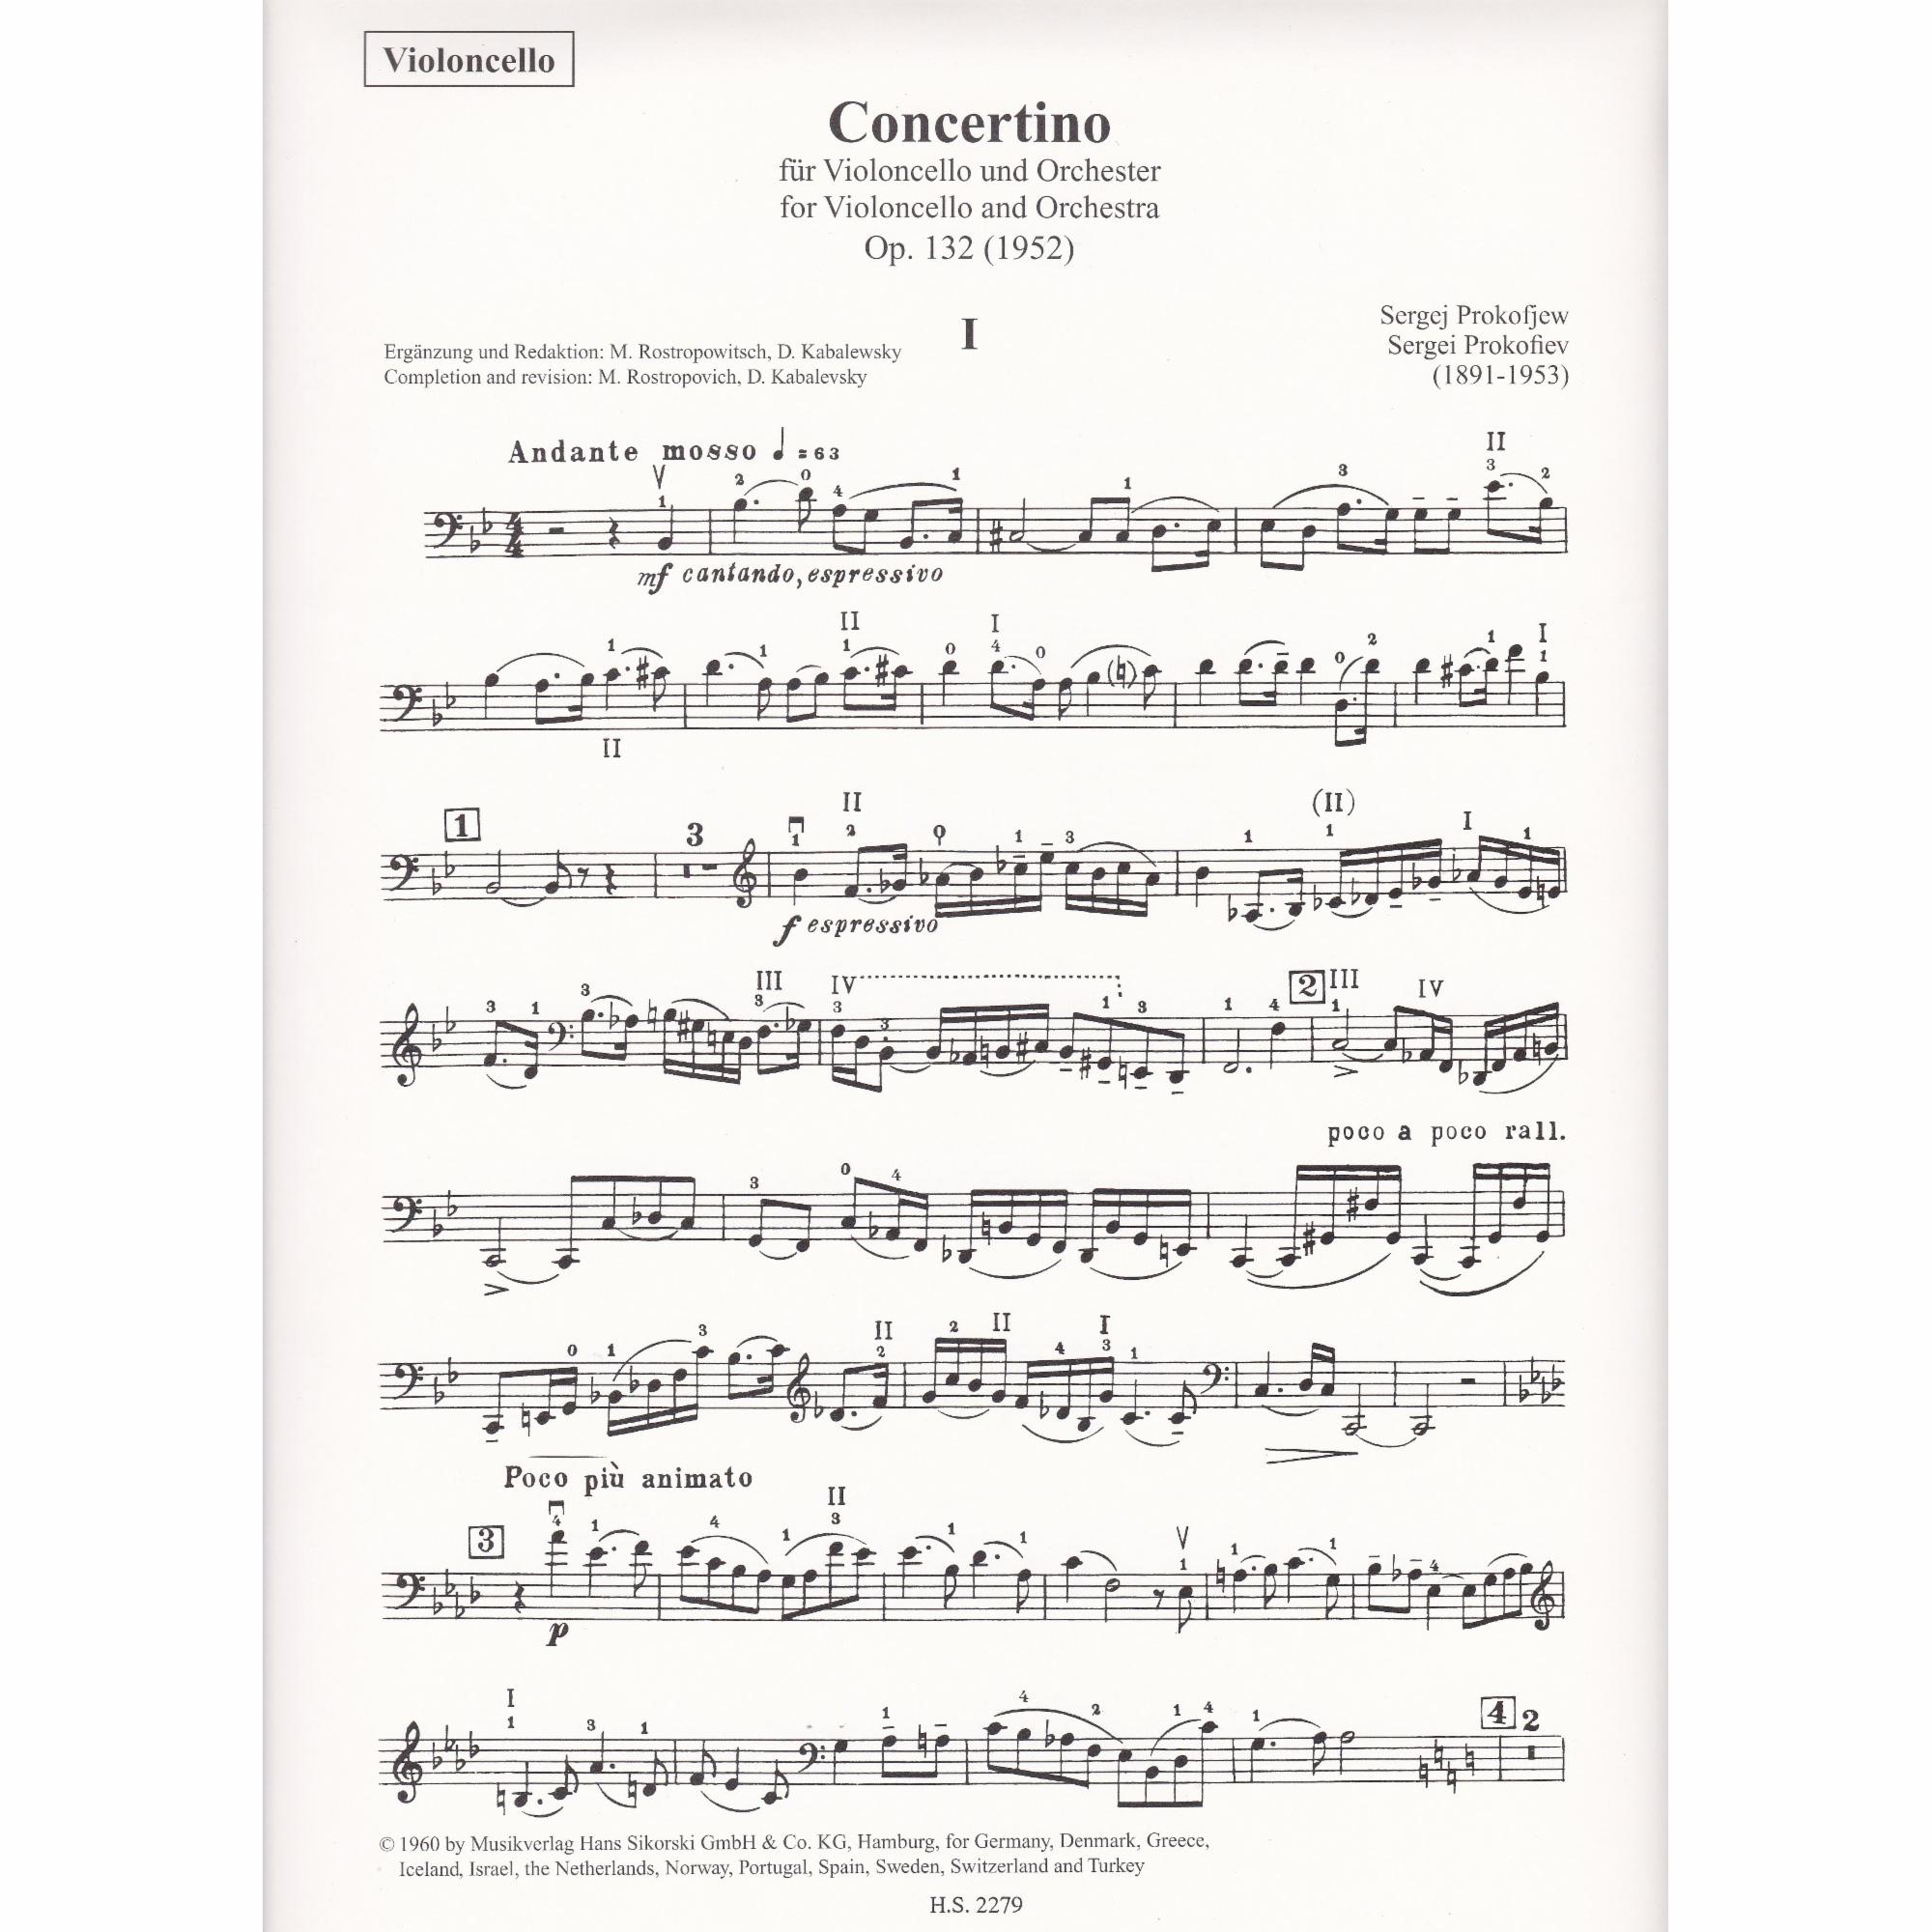 Cello Concertino in G Minor, Op. 132